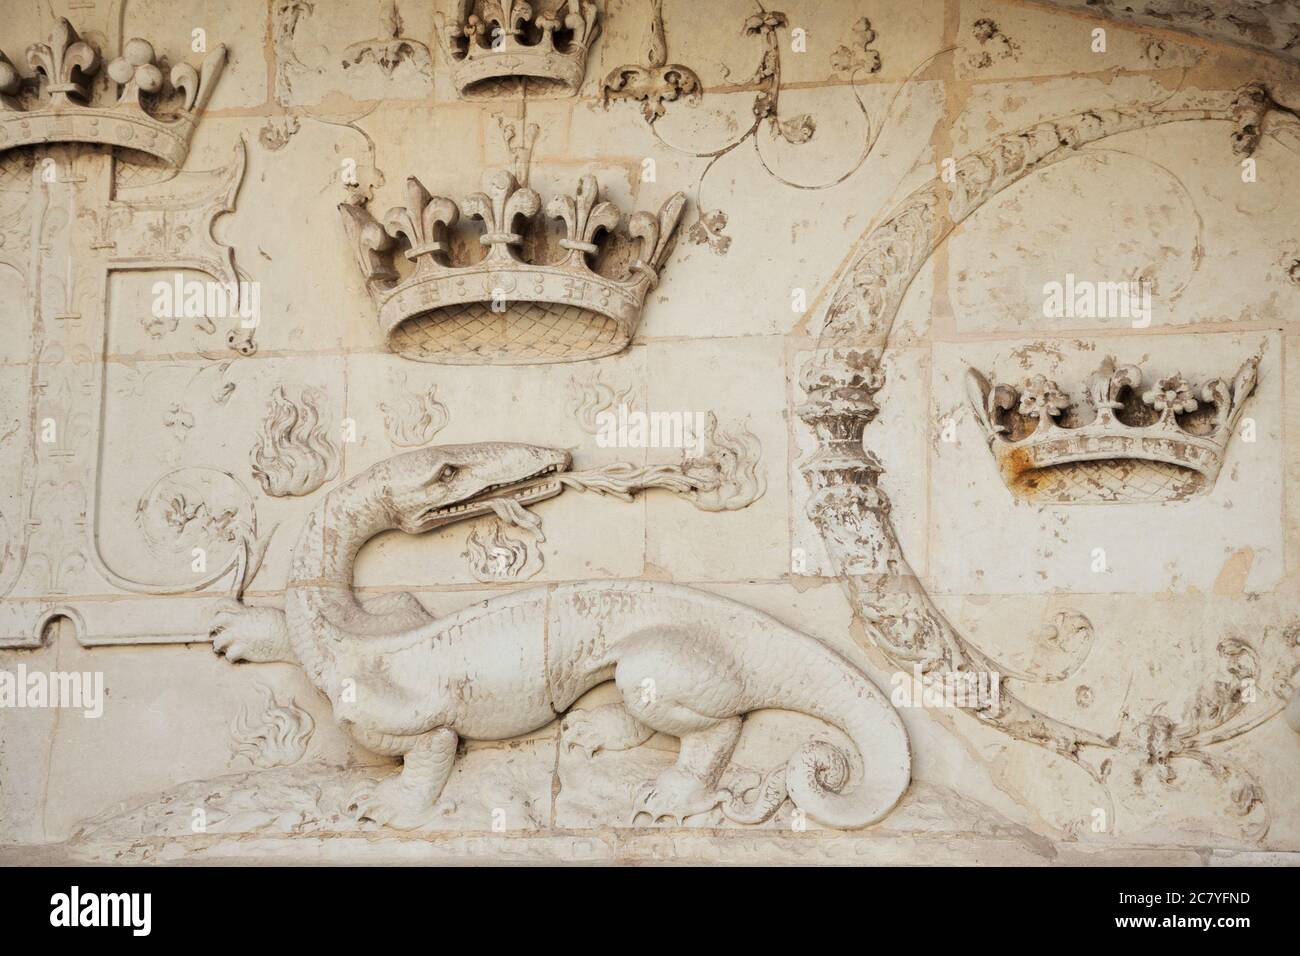 BLOIS, FRANCIA - 15 LUGLIO 2018: Castello reale di Blois. Dettaglio architettonico dell'esterno. Salamander con corone che respira il fuoco Foto Stock